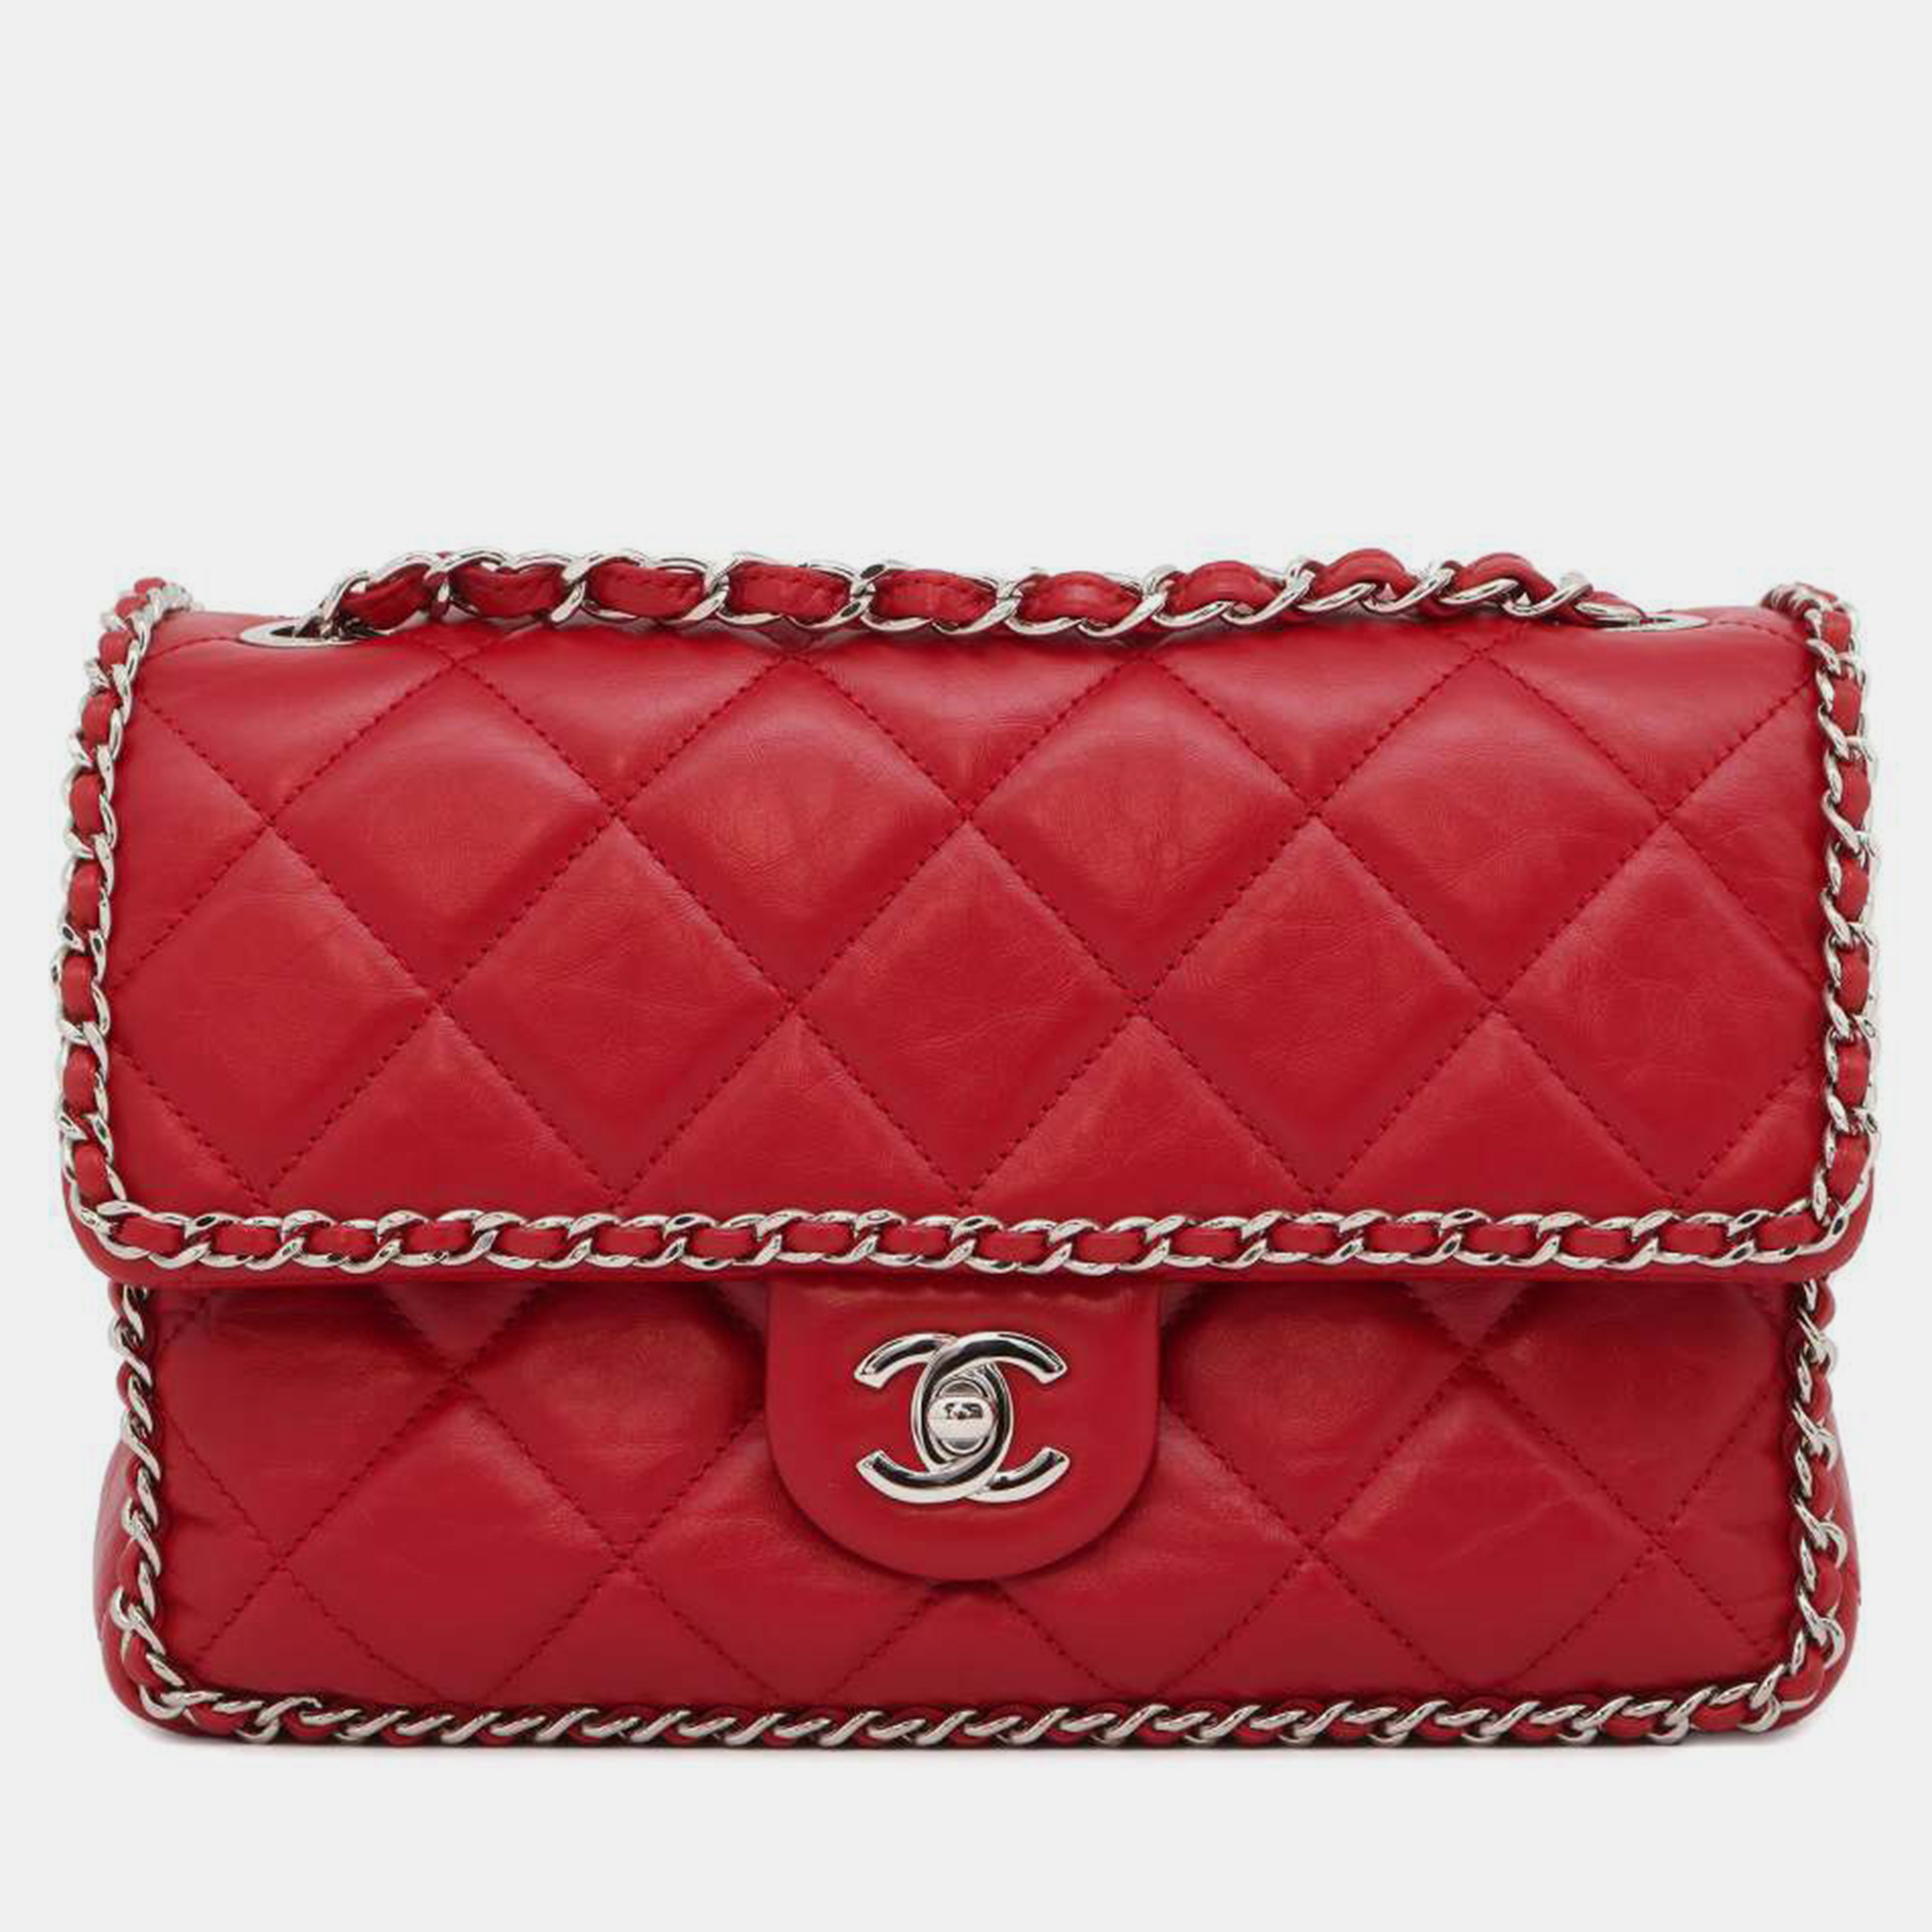 Chanel red vintage flap bag